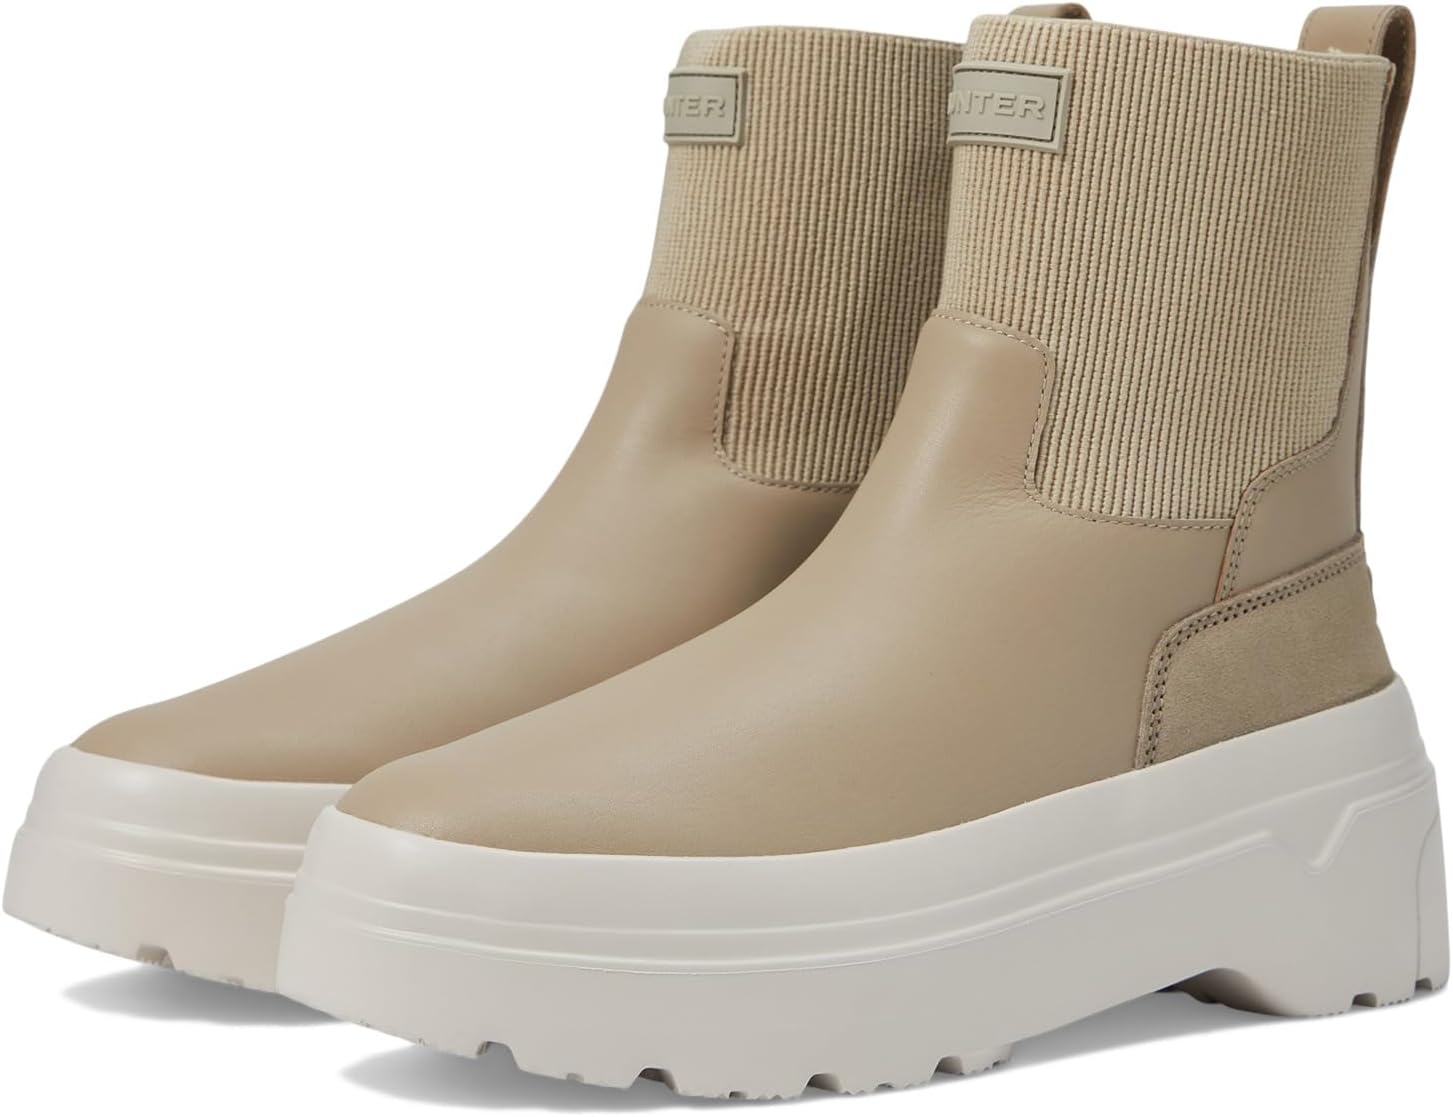 Резиновые сапоги Explorer Chelsea Flatform Boot Hunter, цвет Alloy/Cast походная обувь explorer desert boot hunter цвет cast black